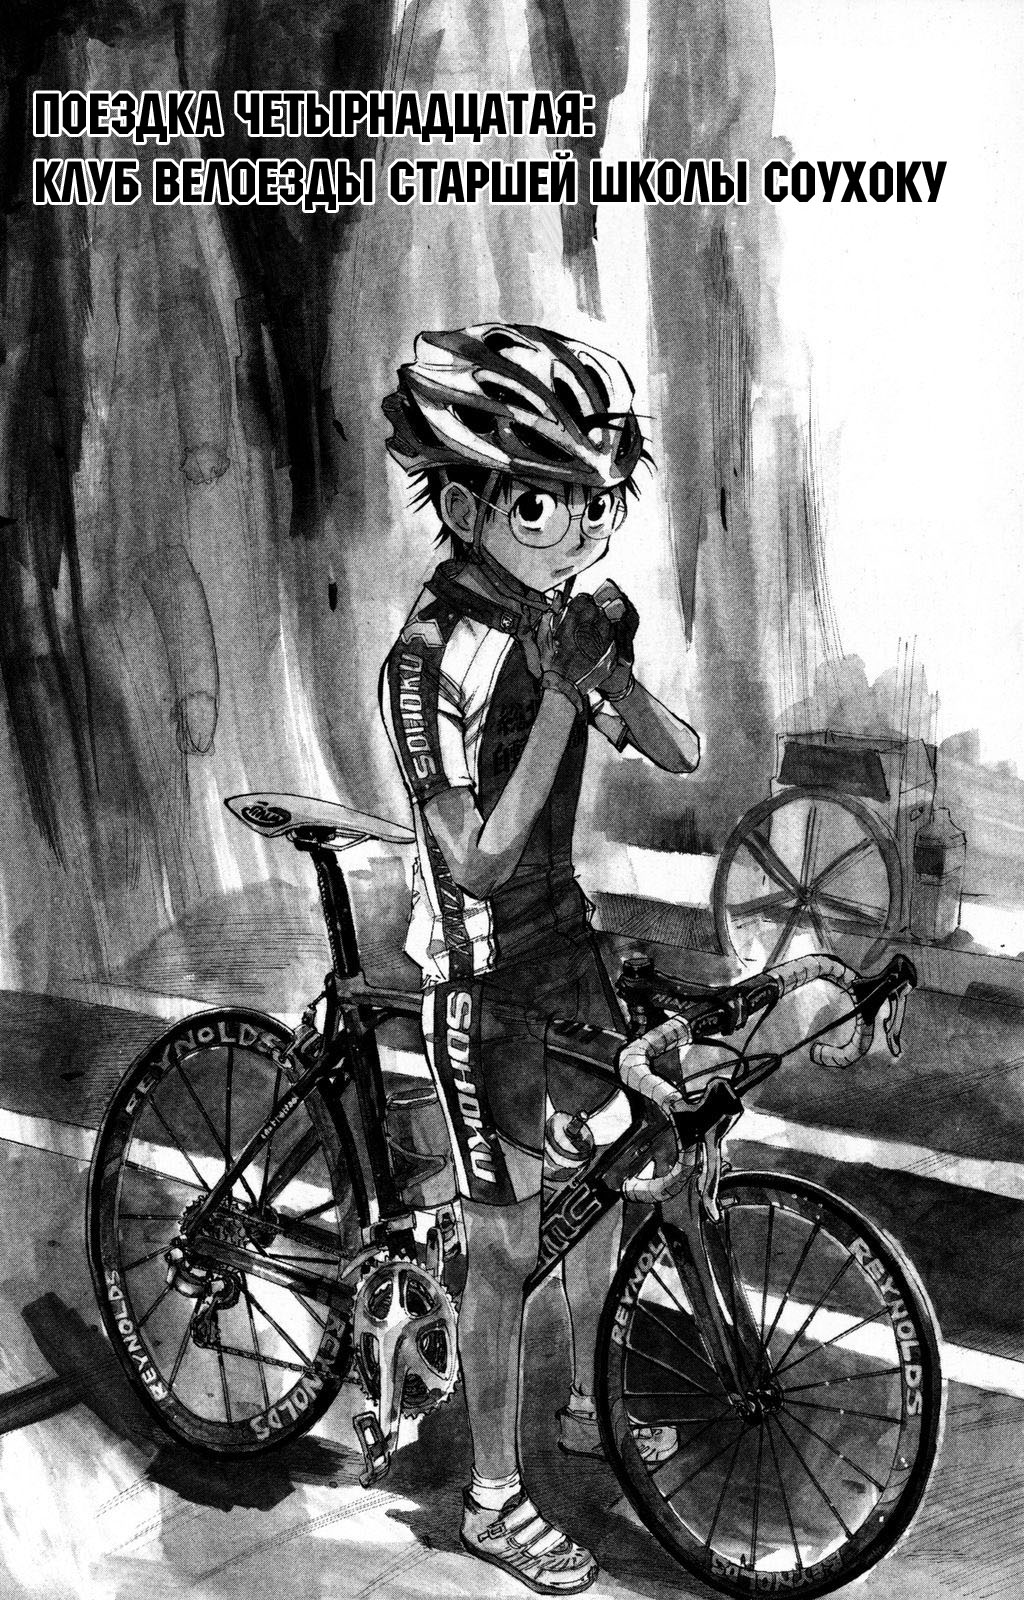 Трусливый велосипедист 2 - 14 Клуб велоезды старшей школы Соухоку